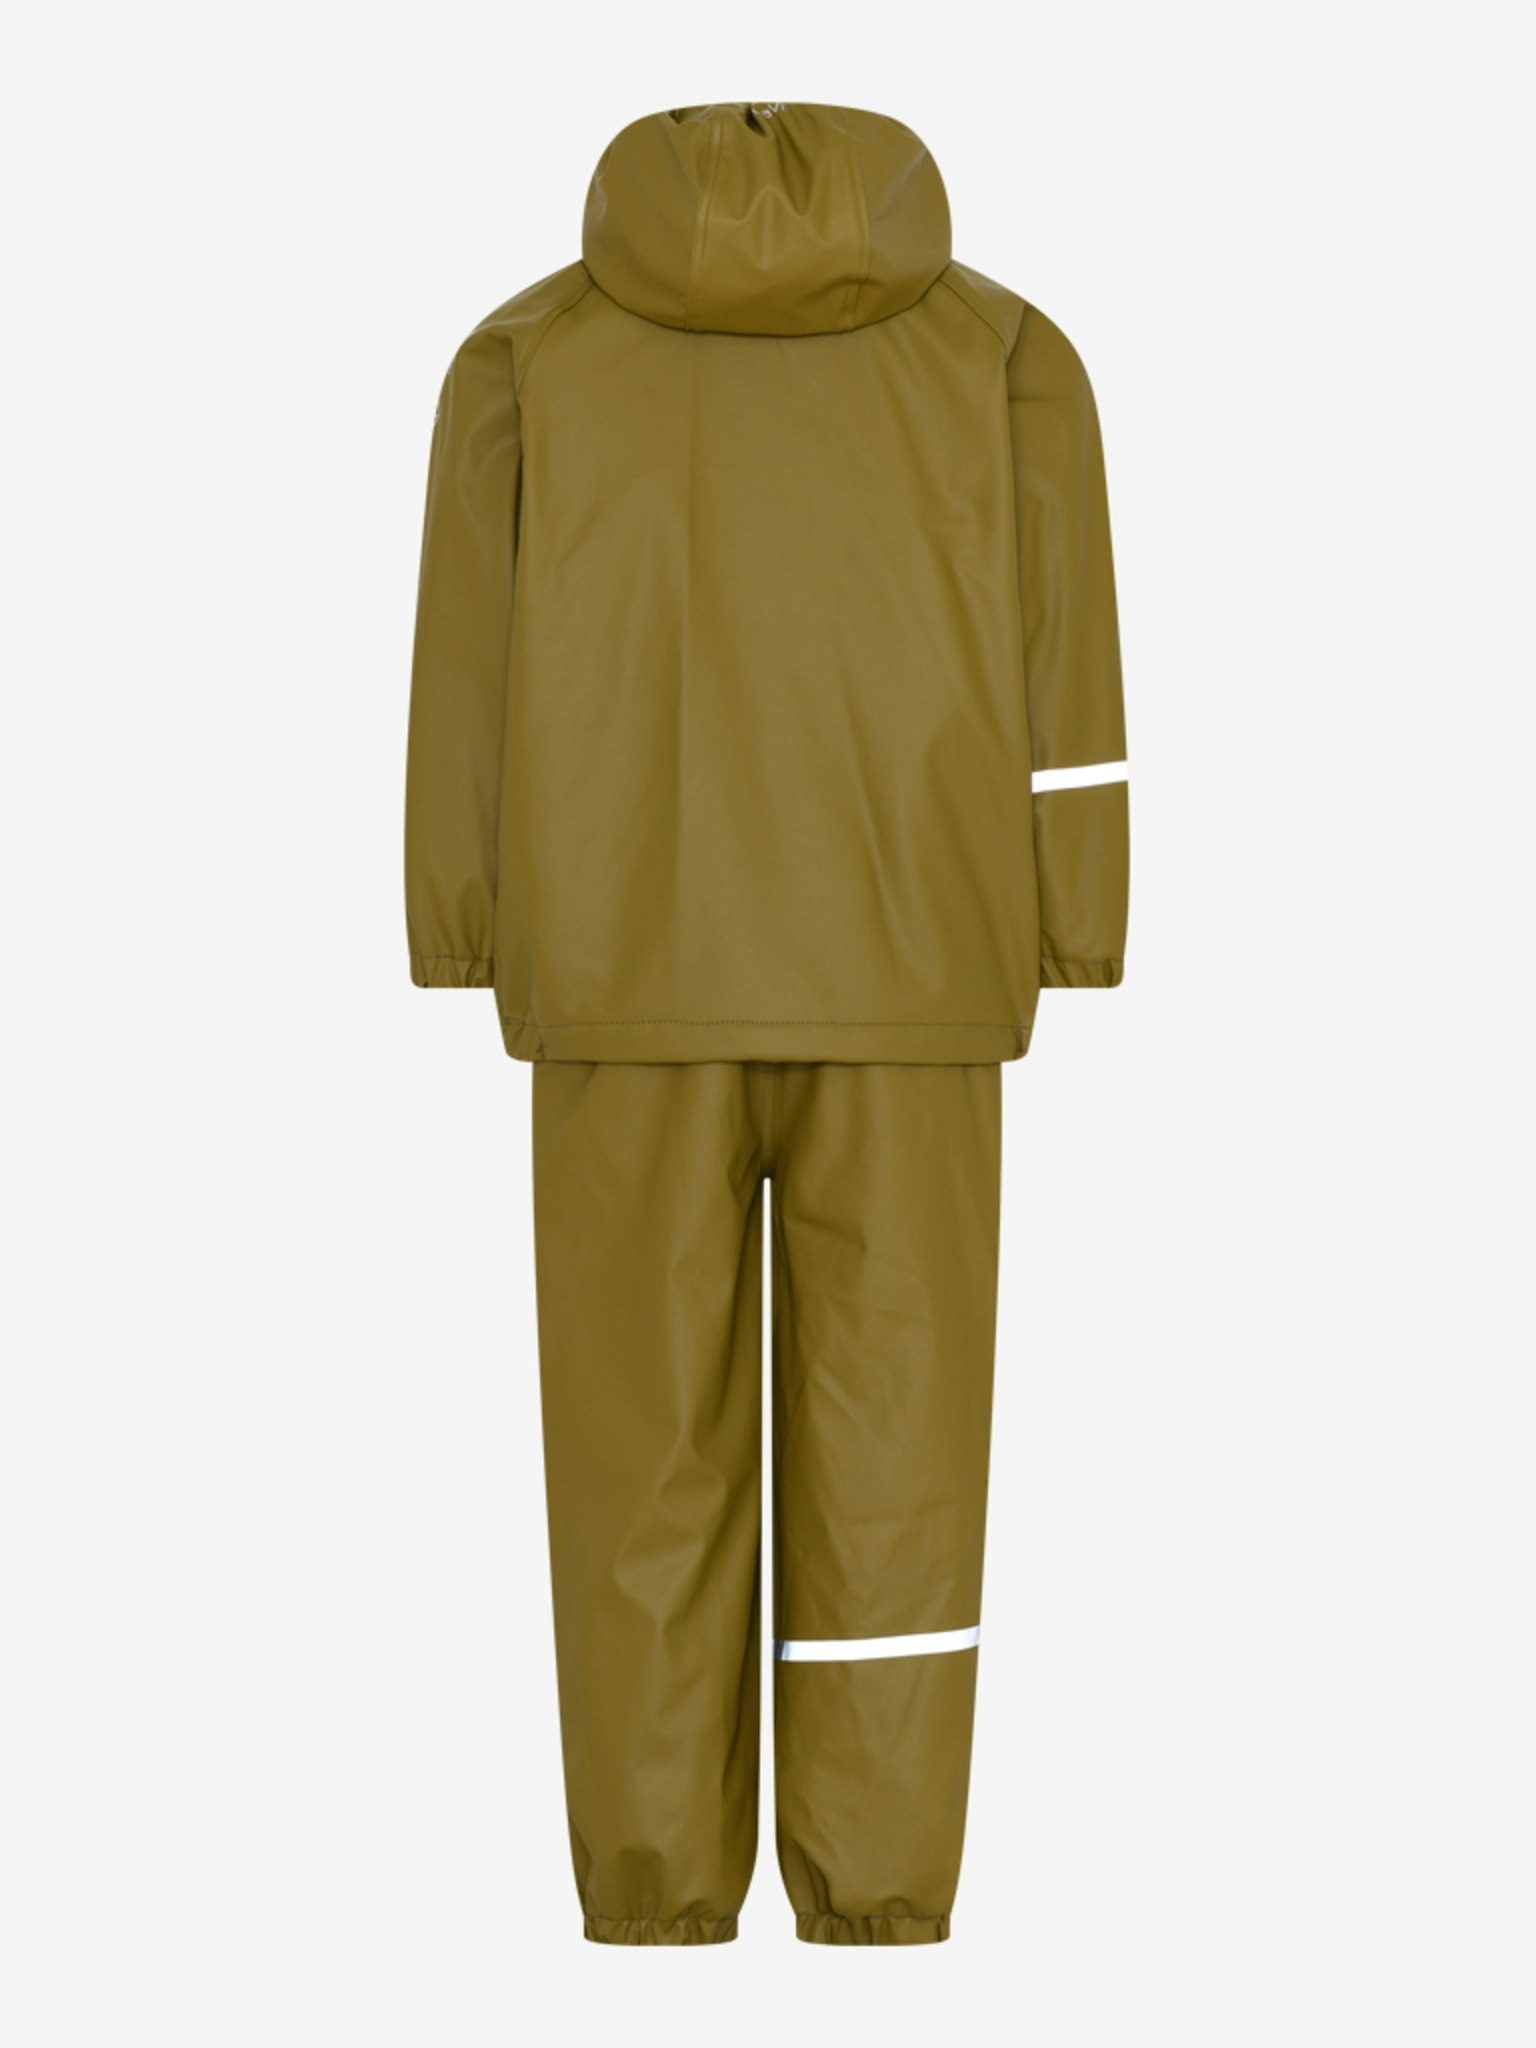 CeLaVi - Rainwear Set -Solid, W.Fleece/ Regnset med fleecefoder- Nutria